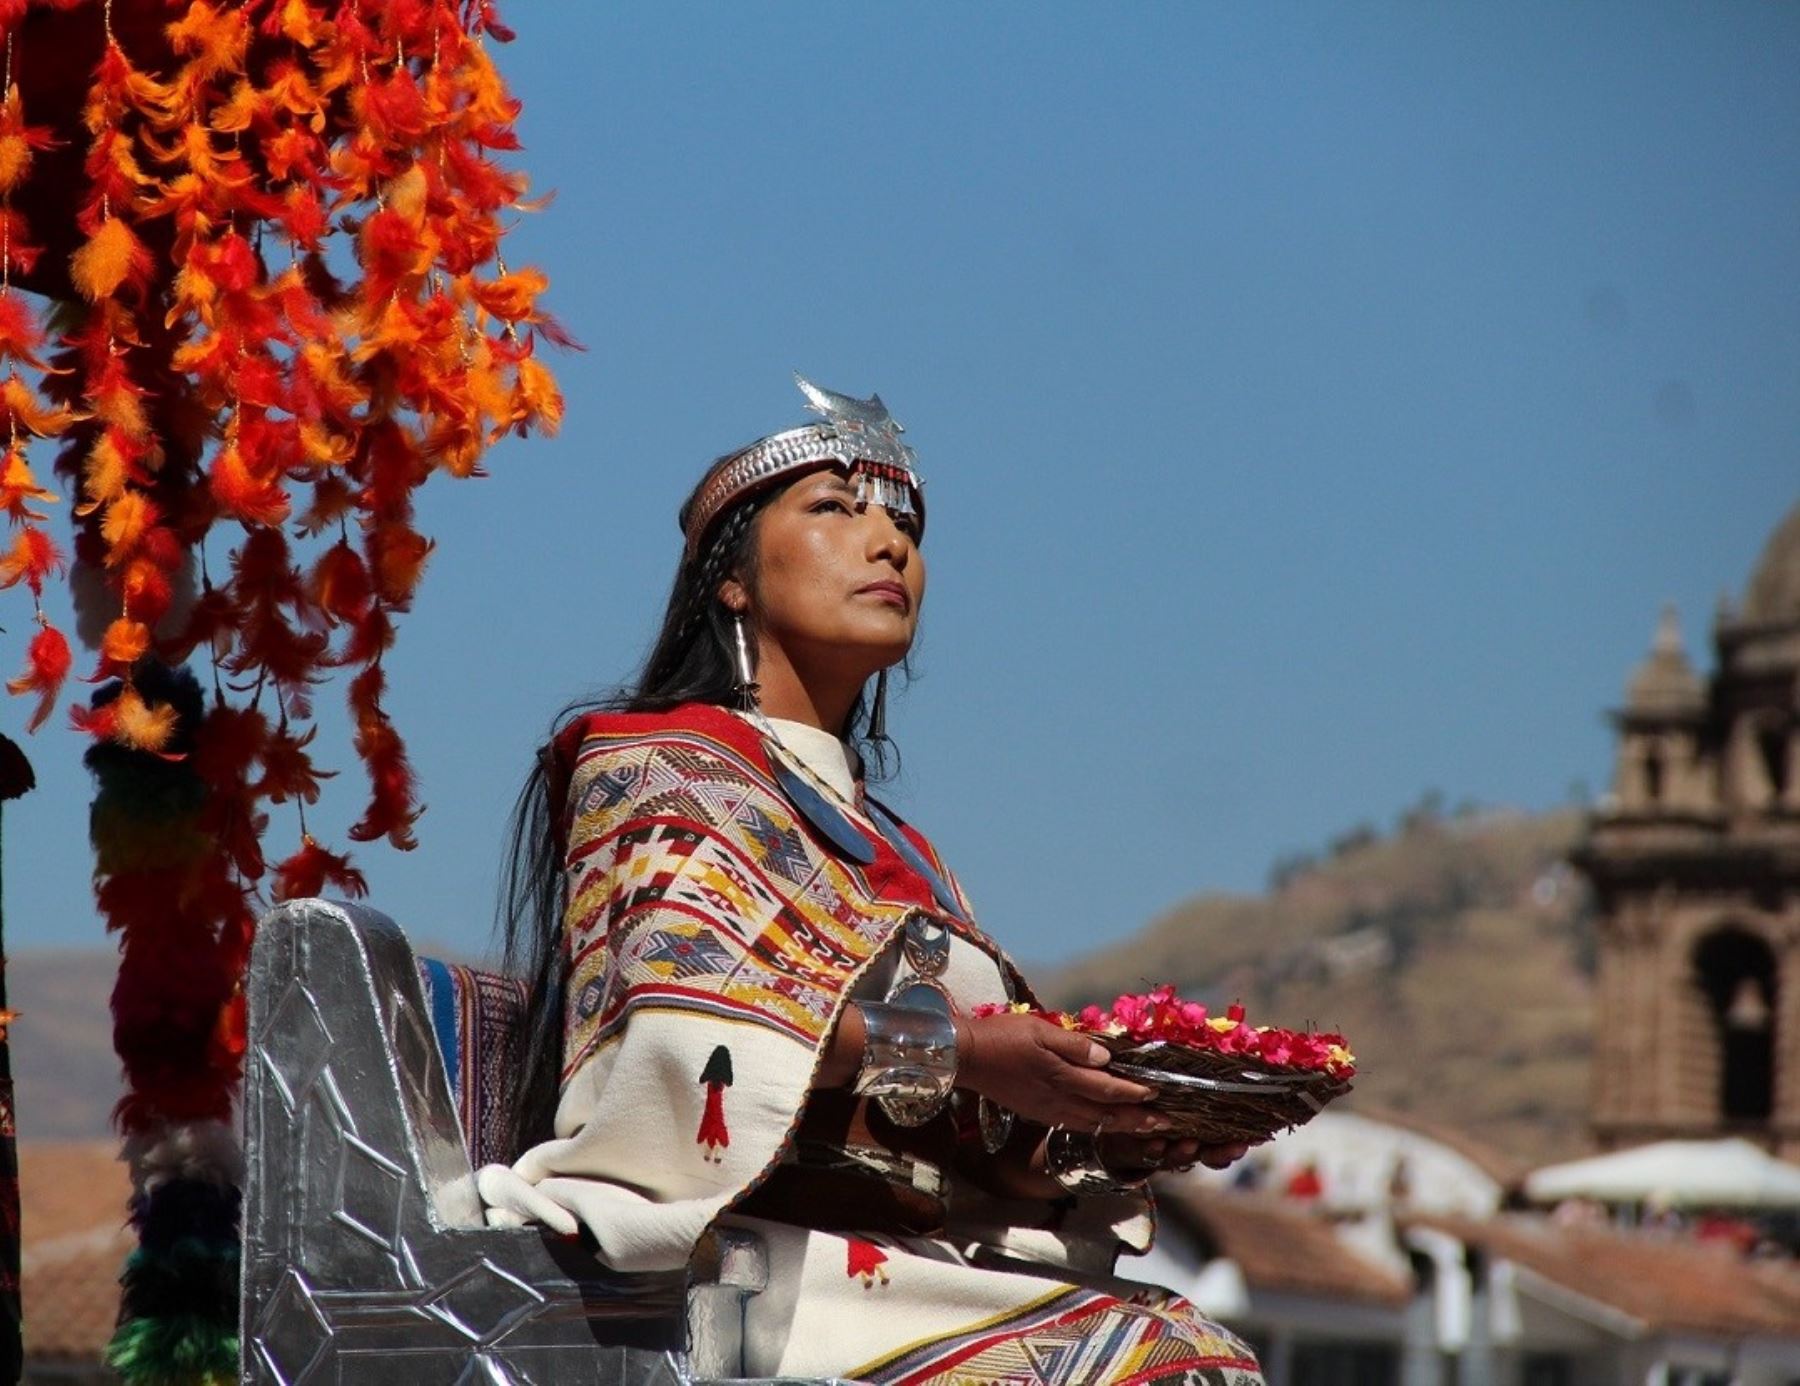 La Coya tendrá un mayor protagonismo en la escenificación de fiesta del Inti Raymi en la explanada de Sacsayhuamán, en Cusco. ANDINA/Difusión